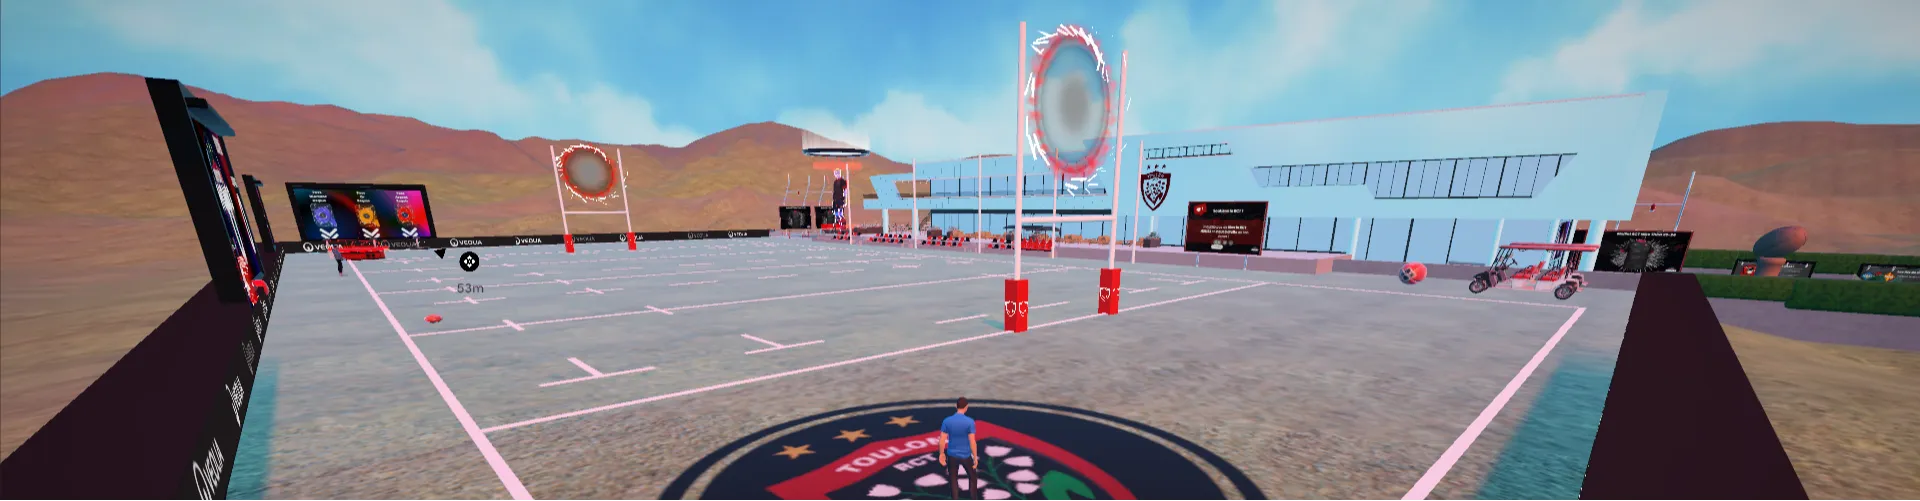 La RCT Hous3, le nouveau lieu virtuel de rencontre des fans toulonnais